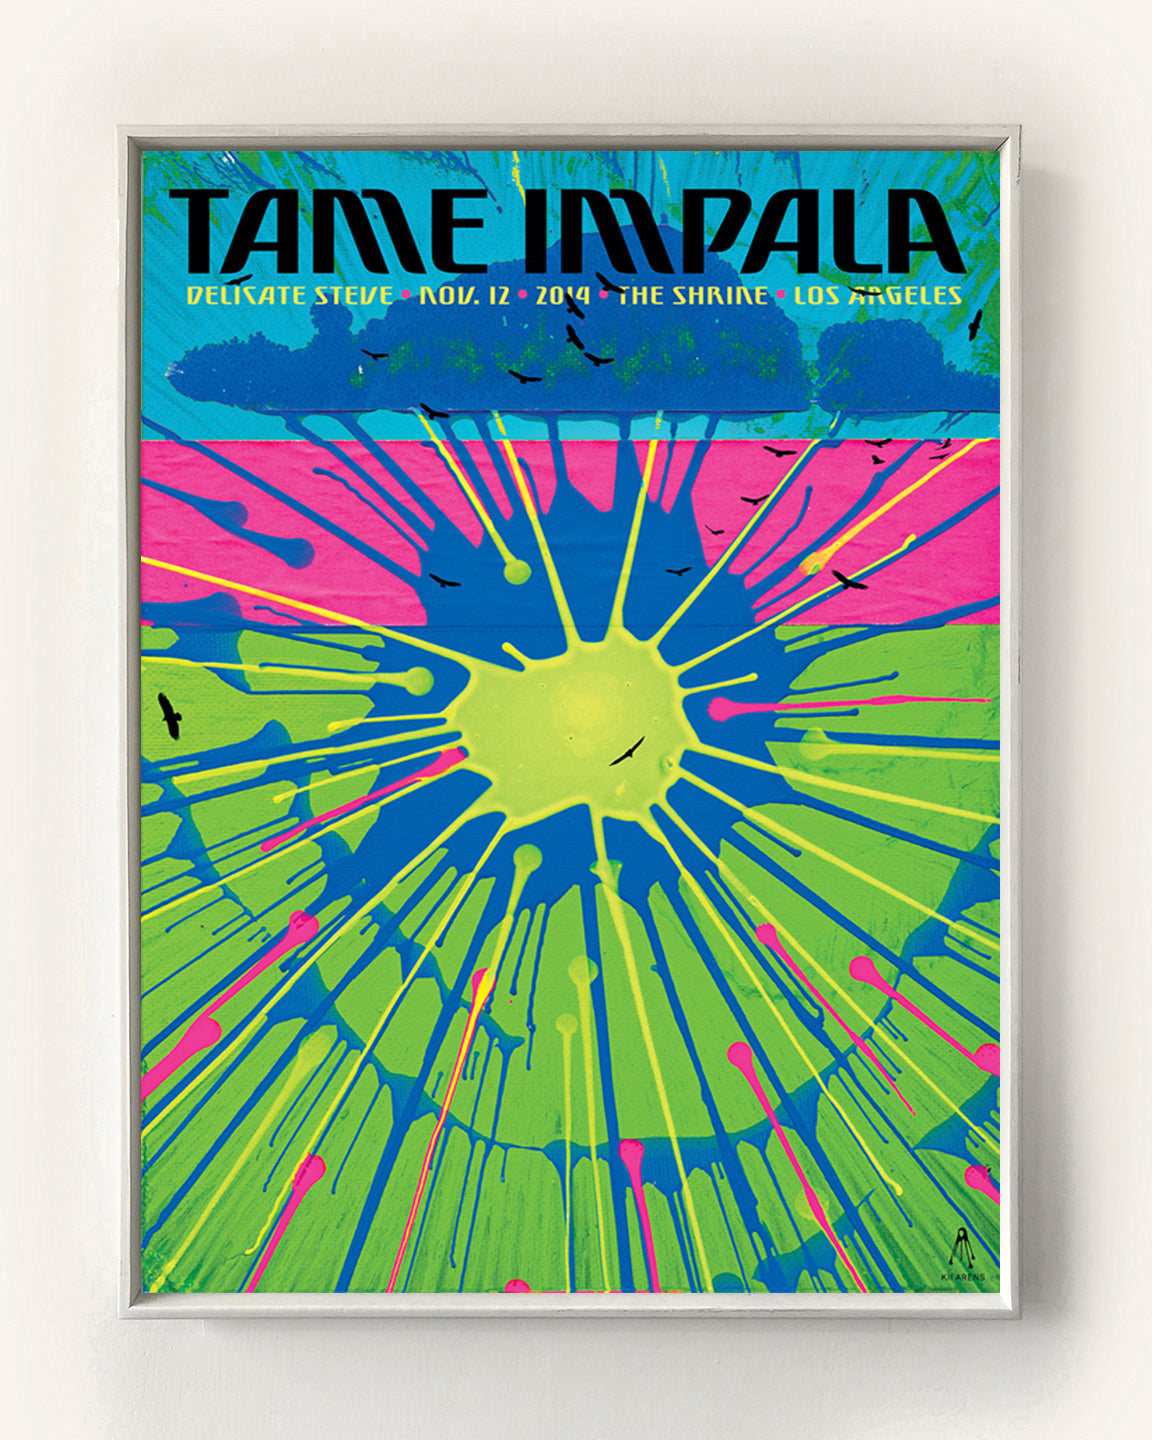 TAME IMPALA - CALIFORNIA 2014